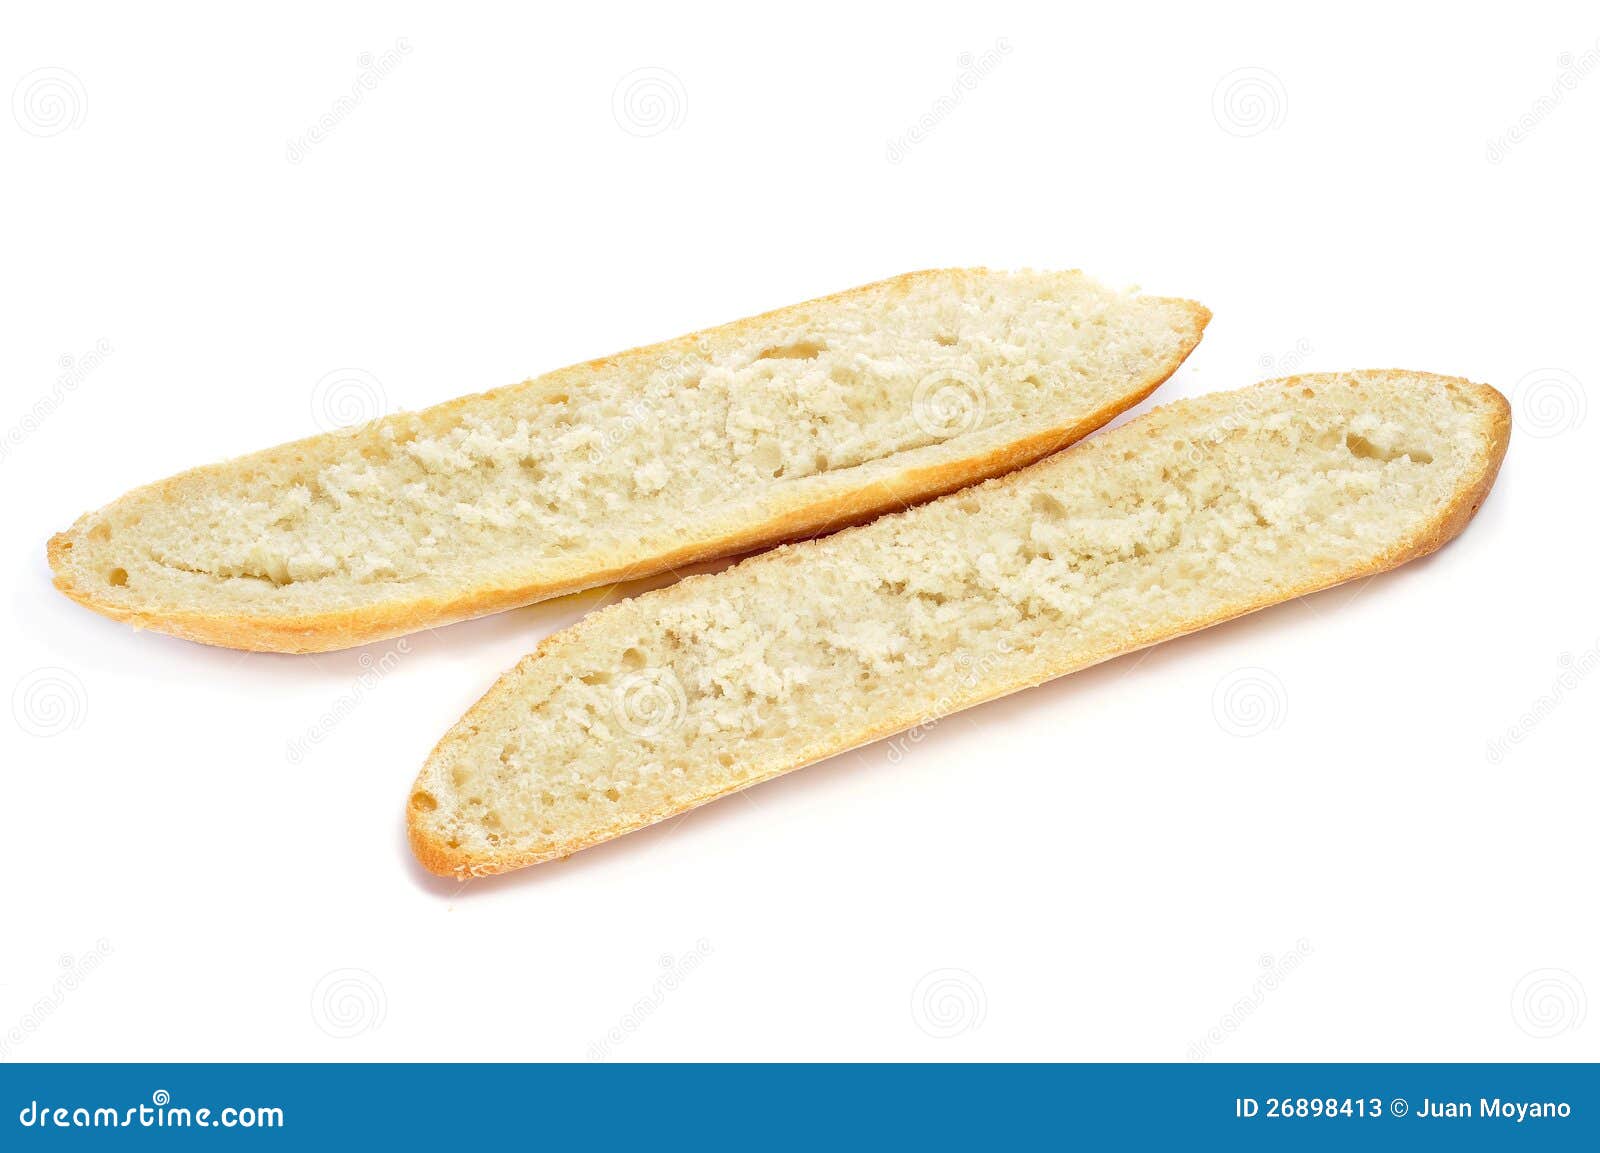 demi-baguette cut in half